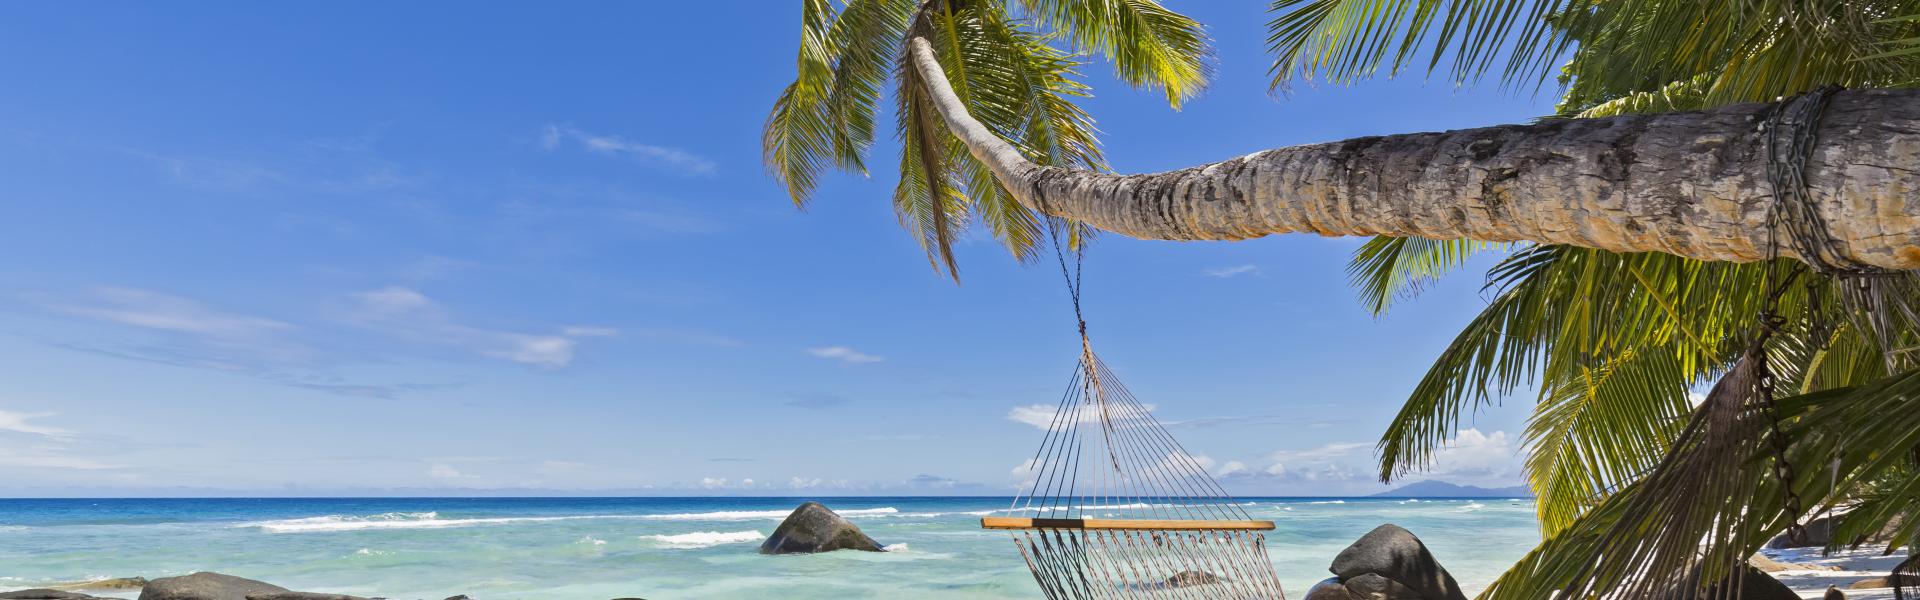 Case vacanze e appartamenti alle Seychelles in affitto - CaseVacanza.it